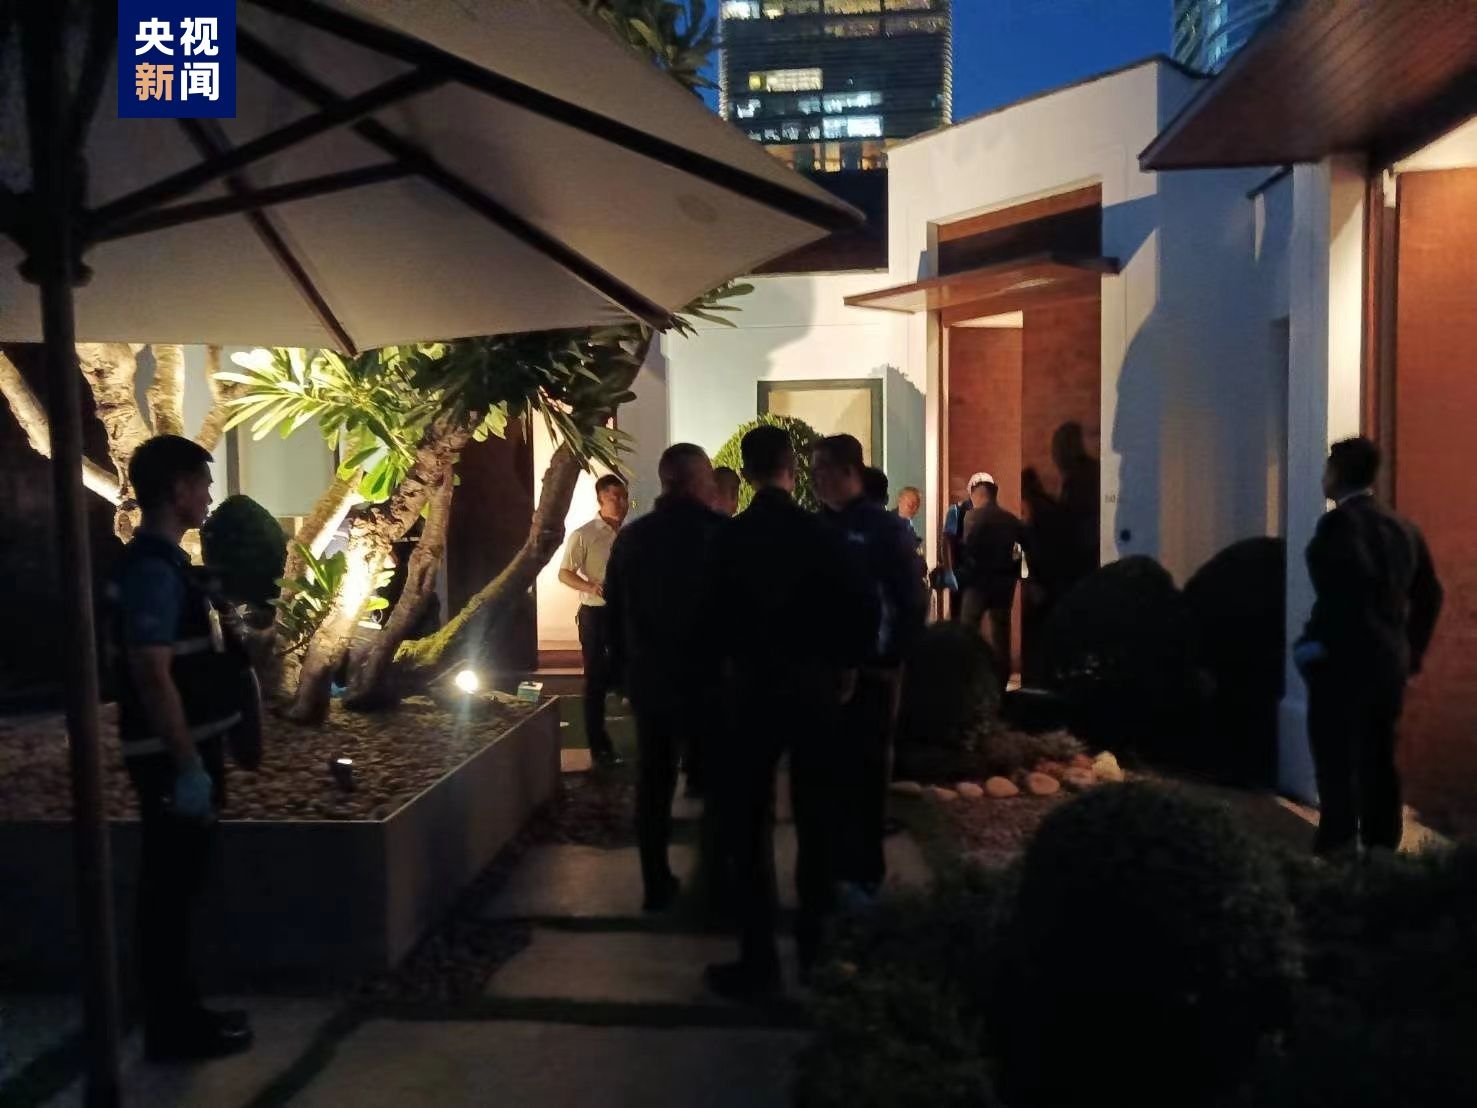 泰国曼谷市中心一酒店发生枪击事件 造成6人死亡